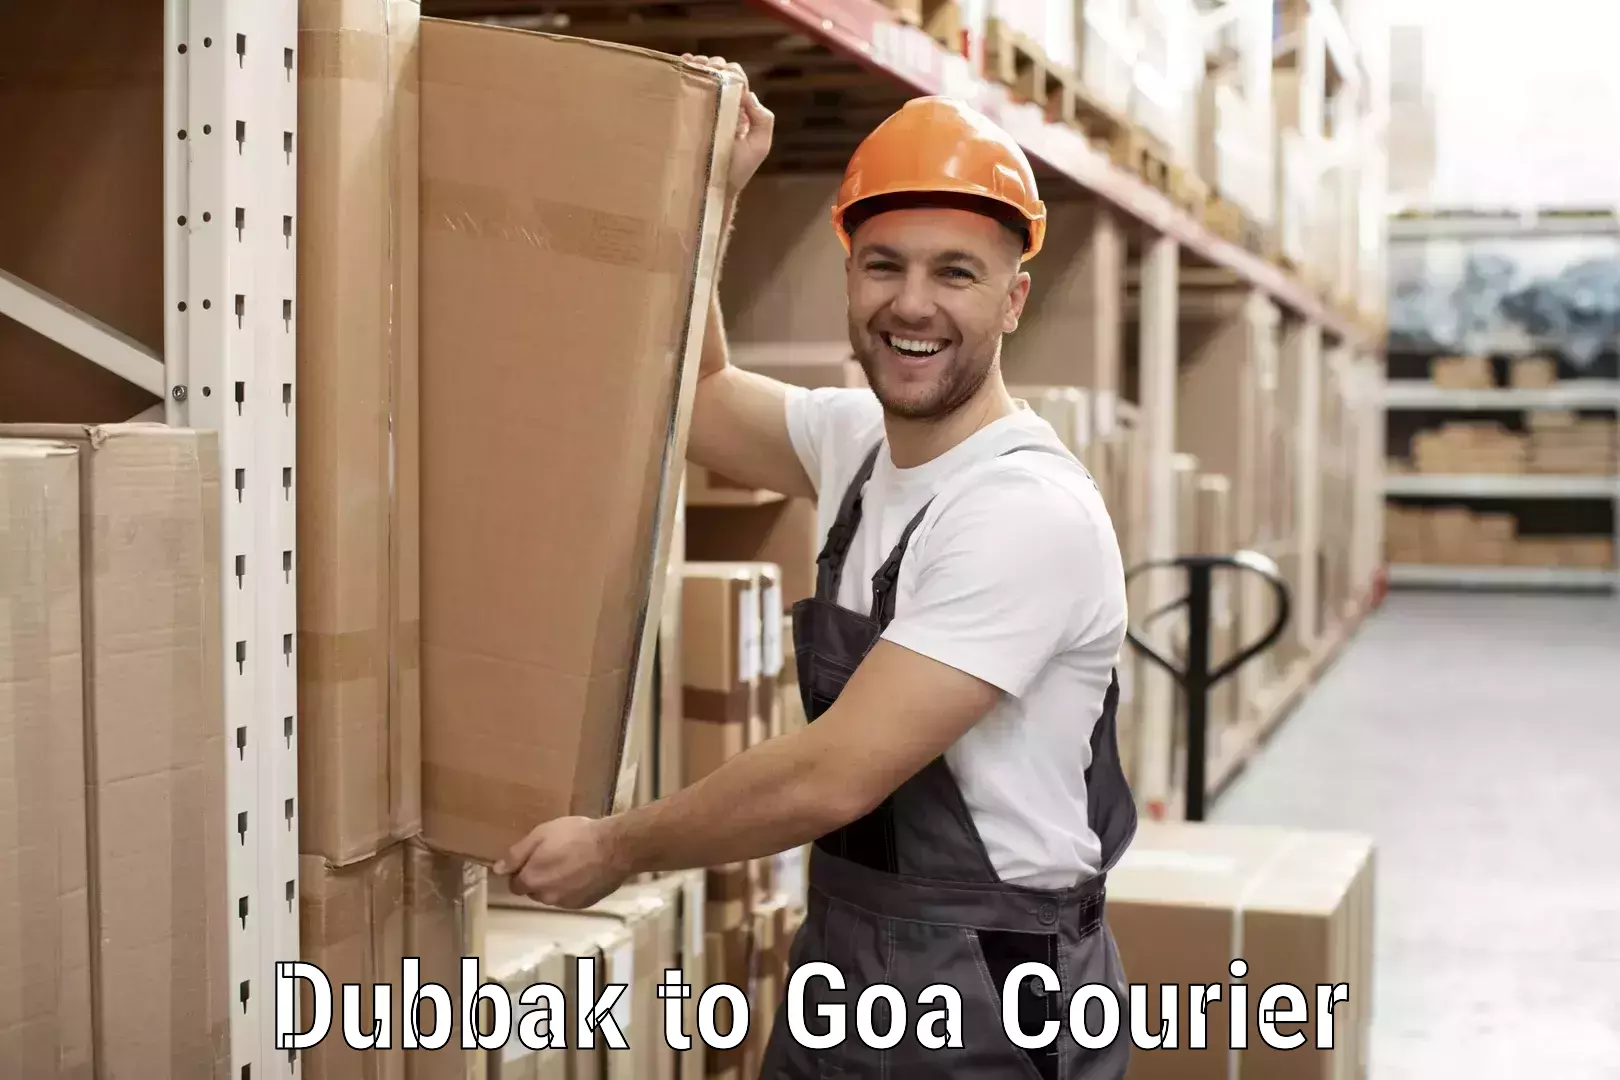 Small parcel delivery Dubbak to Goa